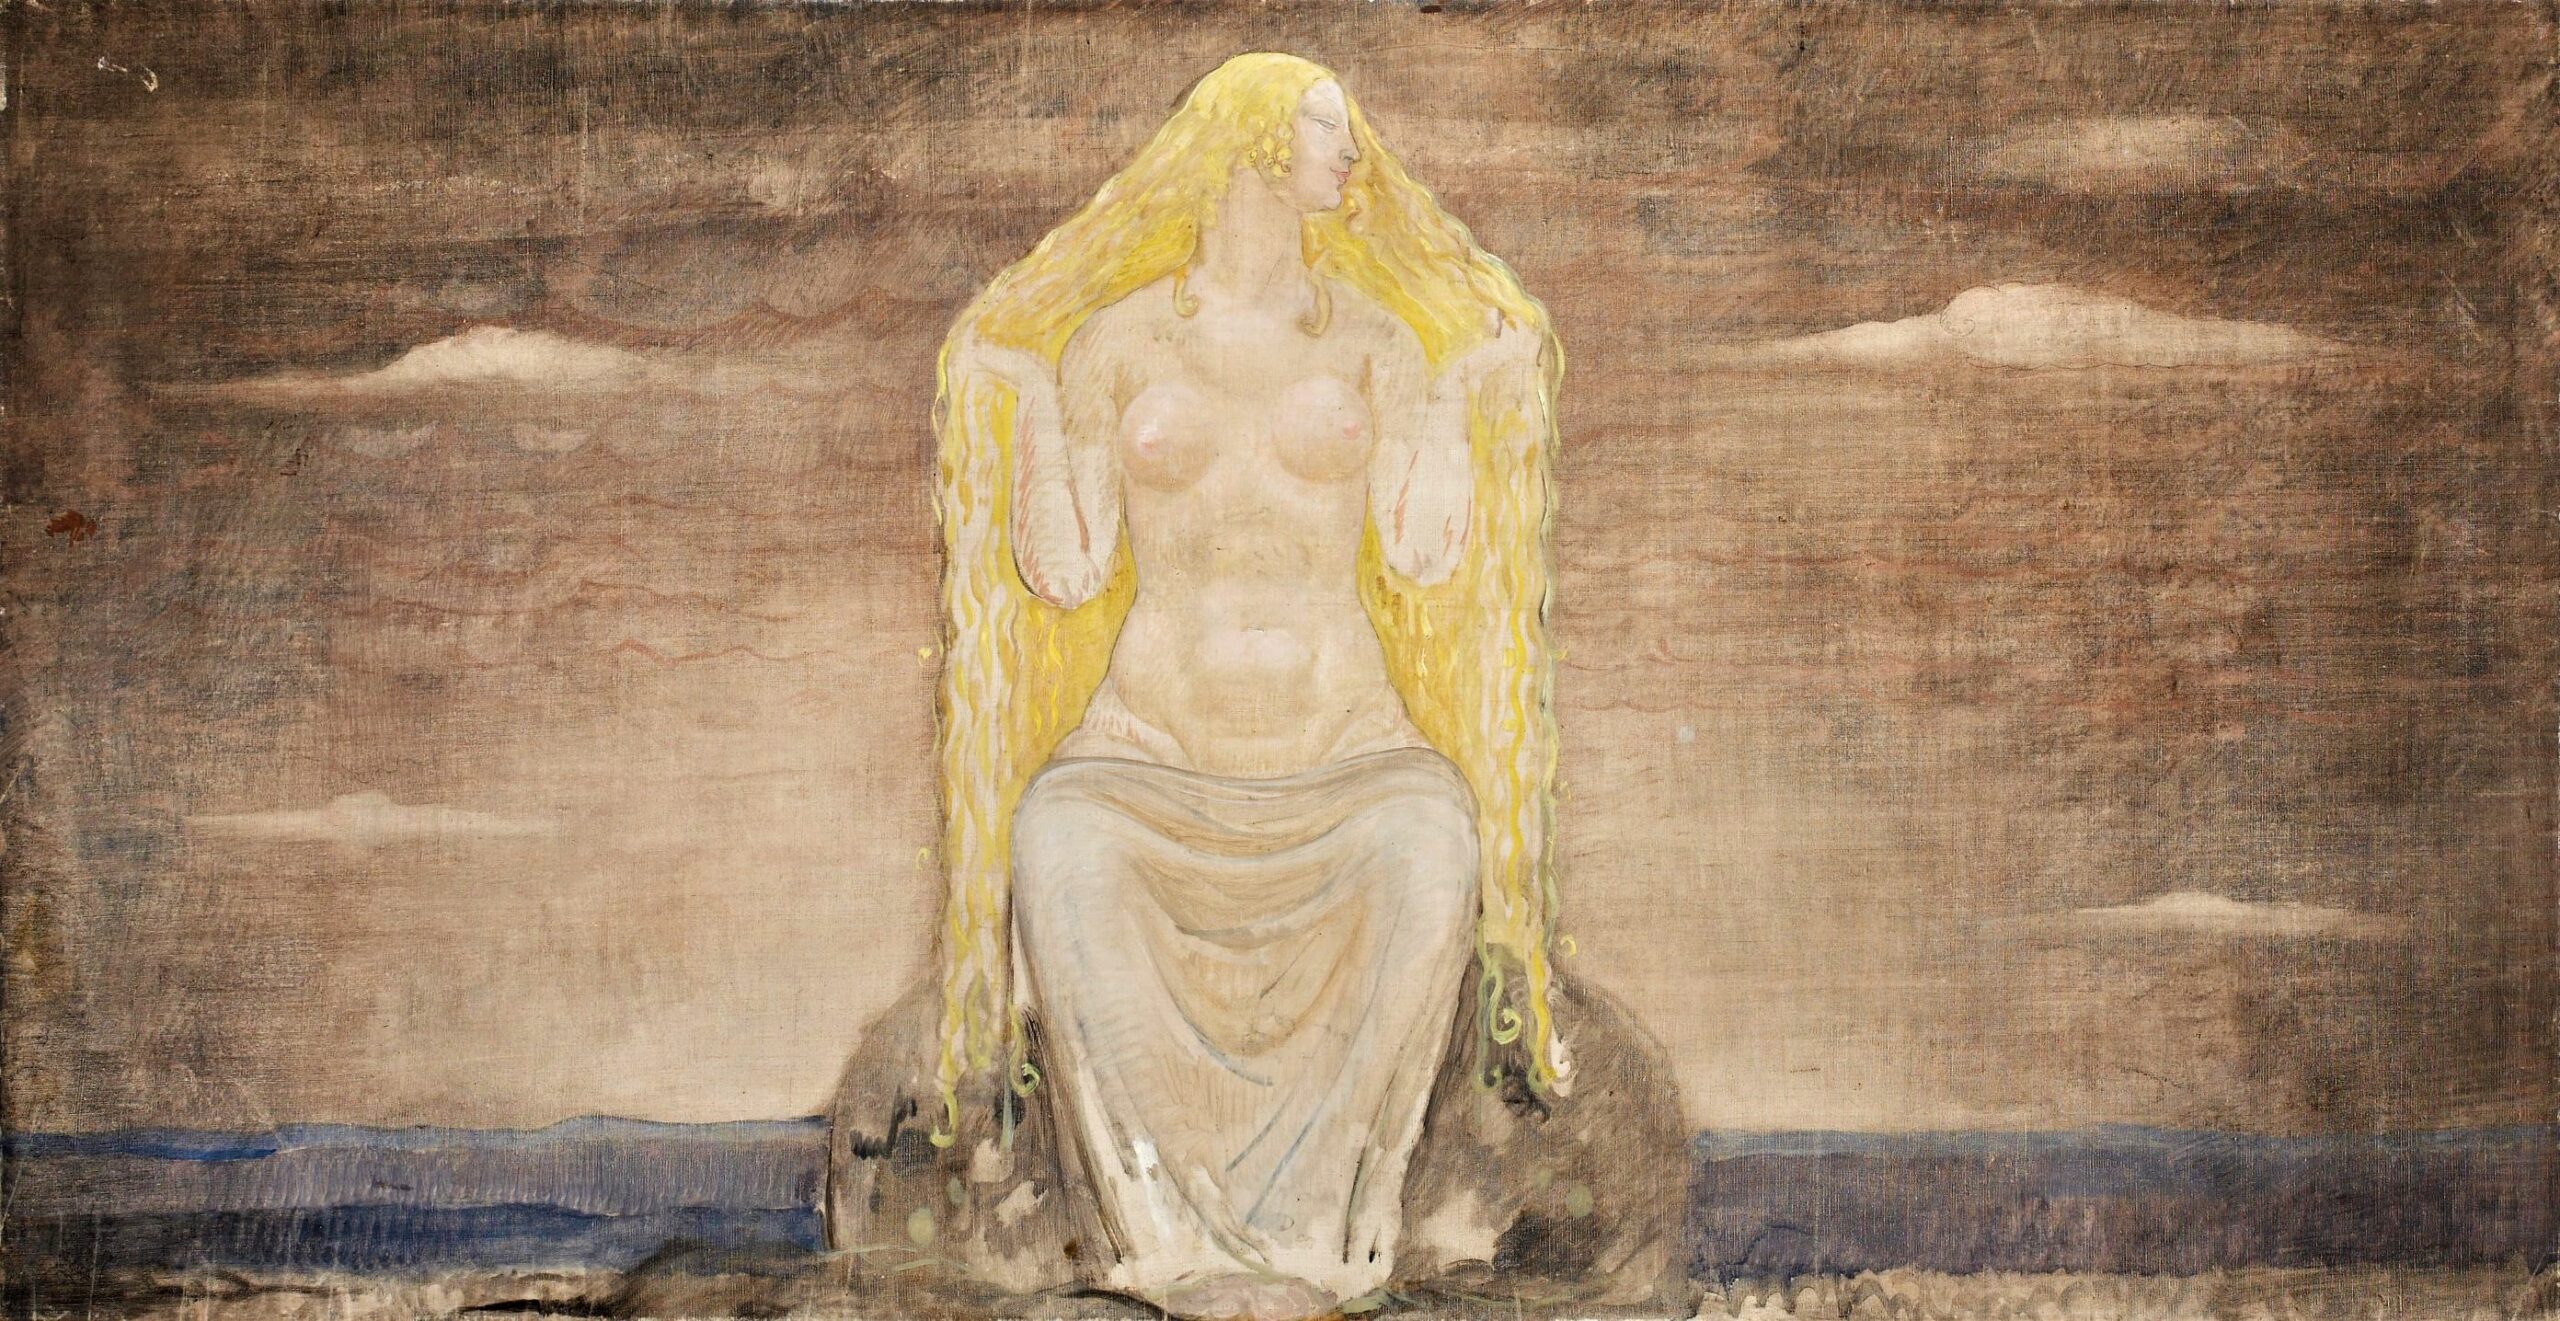 Det er vane-gudinden Freja, der lærer aserne trolddomskunsten sejd (John Baur, omkr. 1900)